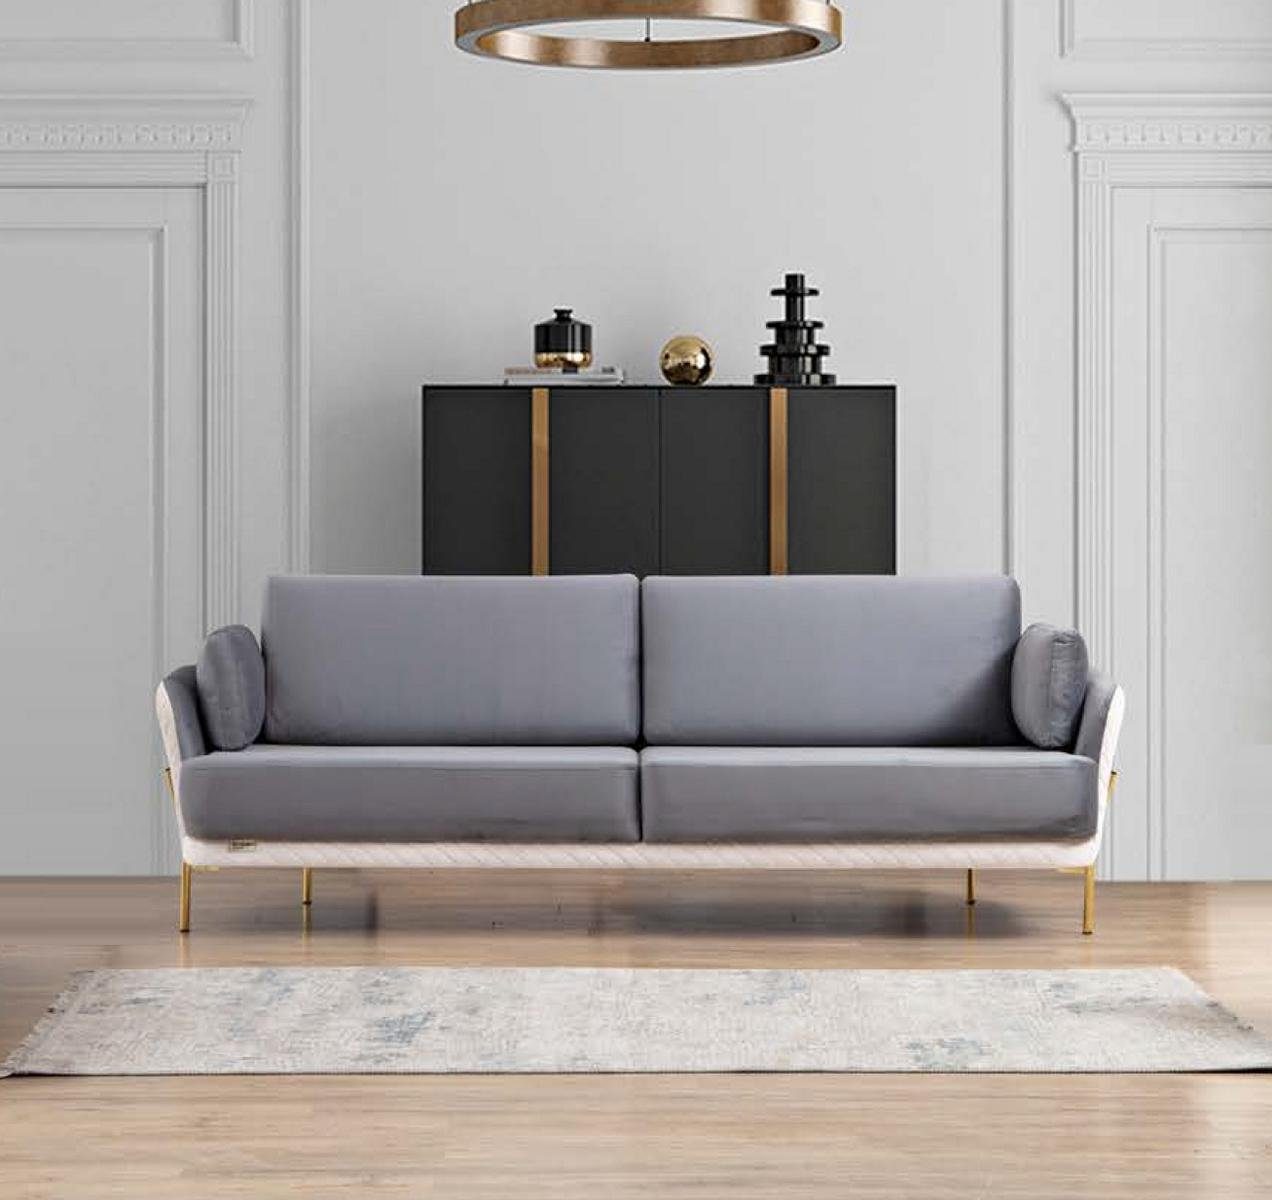 JVmoebel Sofa Sofa 3 Sitzer Luxus Möbel Textil Samt Stoff Dreisitzer Design Modern